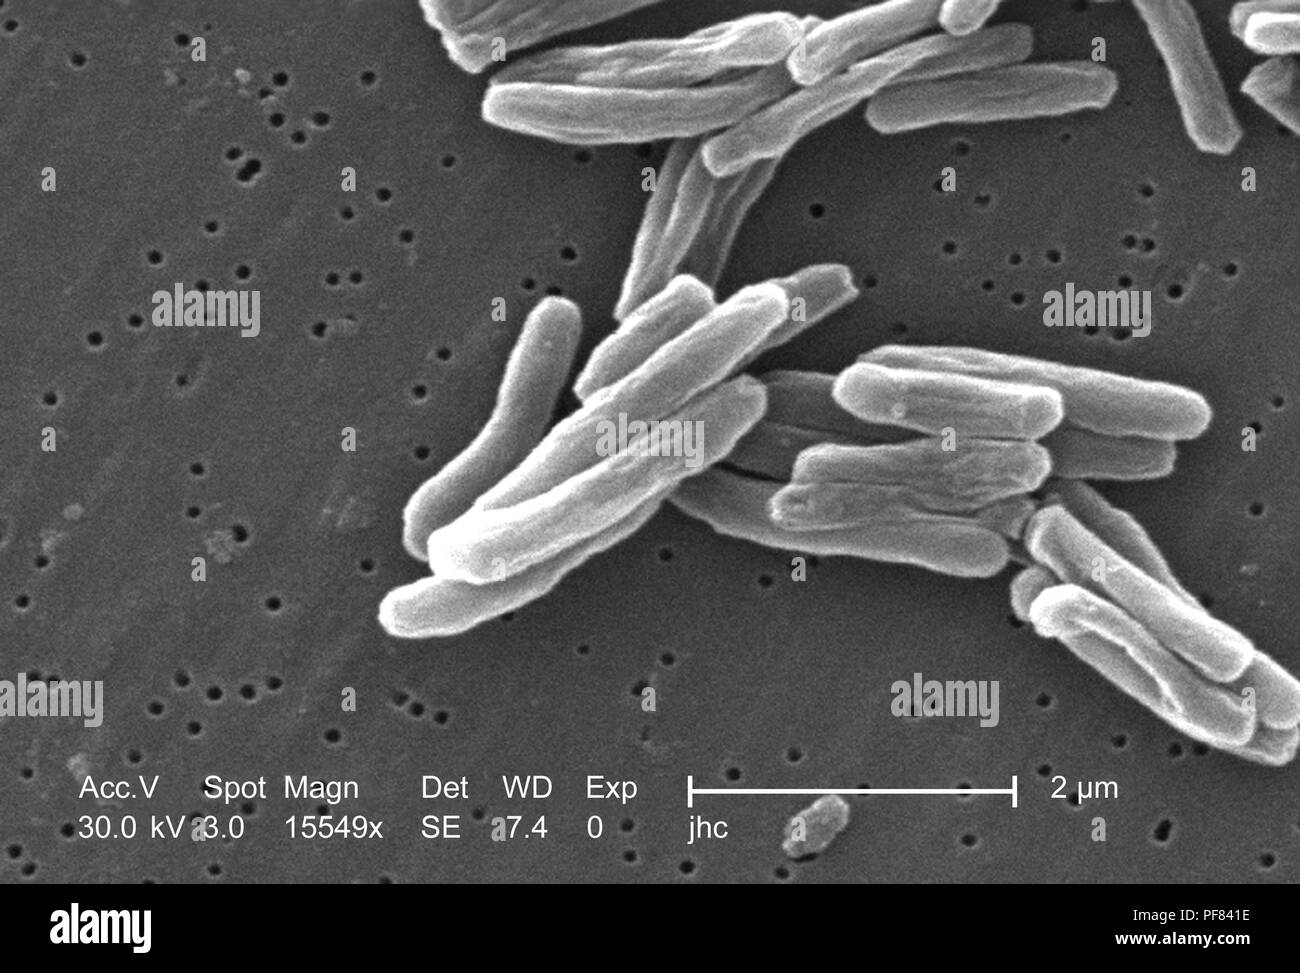 Dettagli ultrastrutturali di Gram-positivi di Mycobacterium tuberculosis batteri hanno rivelato nel 15549x scansione ingrandita al microscopio elettronico (SEM) immagine, 2006. Immagine cortesia di centri per il controllo delle malattie (CDC) / Ray Butler, MS, Janice Haney Carr. () Foto Stock